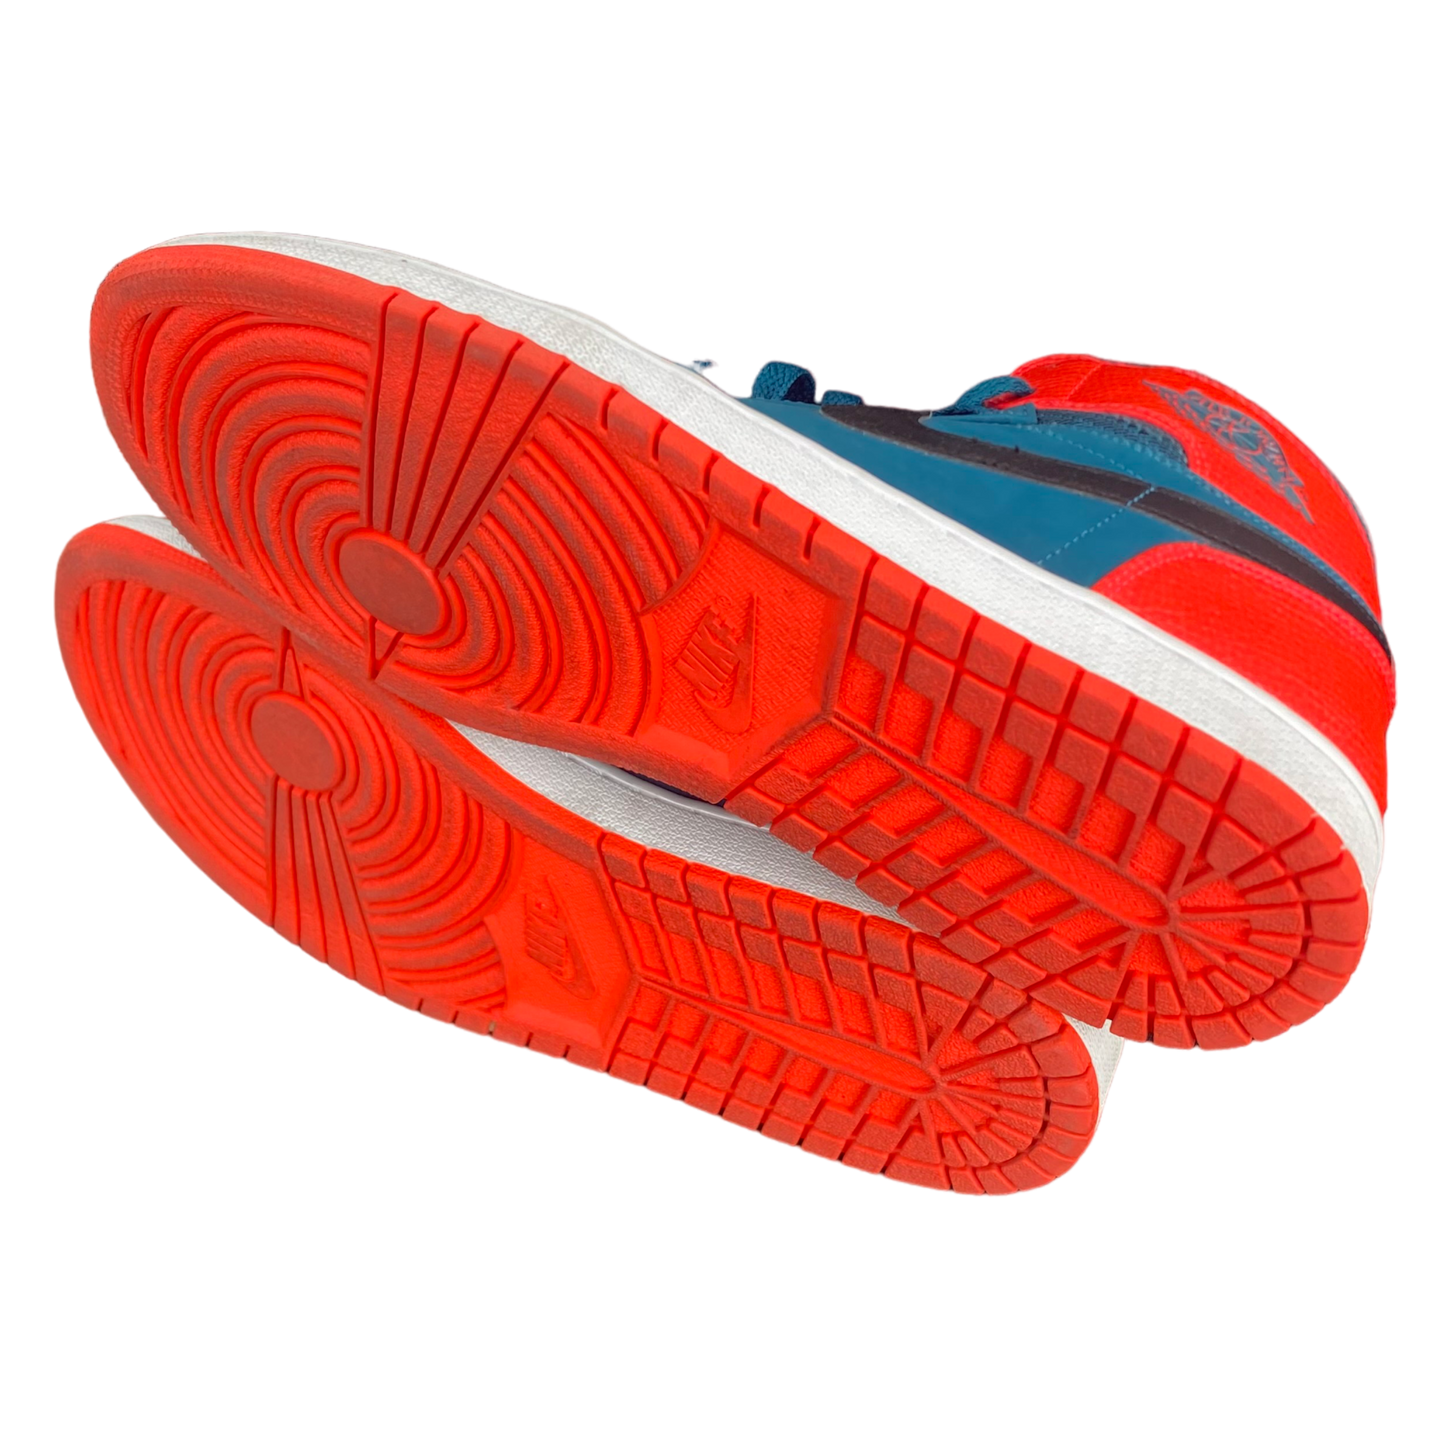 Nike - Air Jordan 1 Retro High 'Russell Westbrook Sneakers